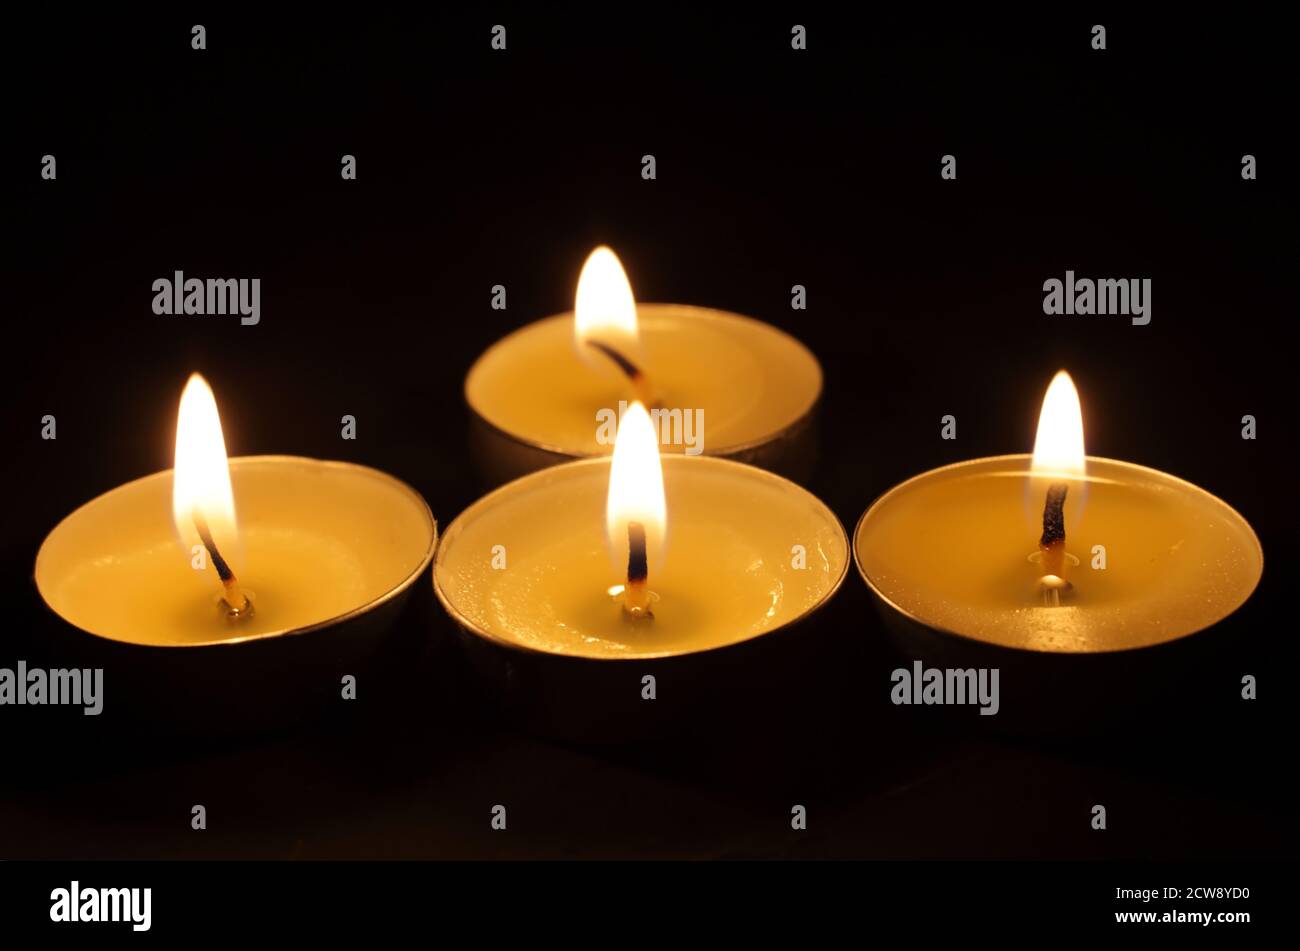 Vier brennende Kerzen. Weihnachtskerzen brennen im Dunkeln. Fokus ist im Vordergrund, Kerzen sind nicht fokussiert. Stockfoto